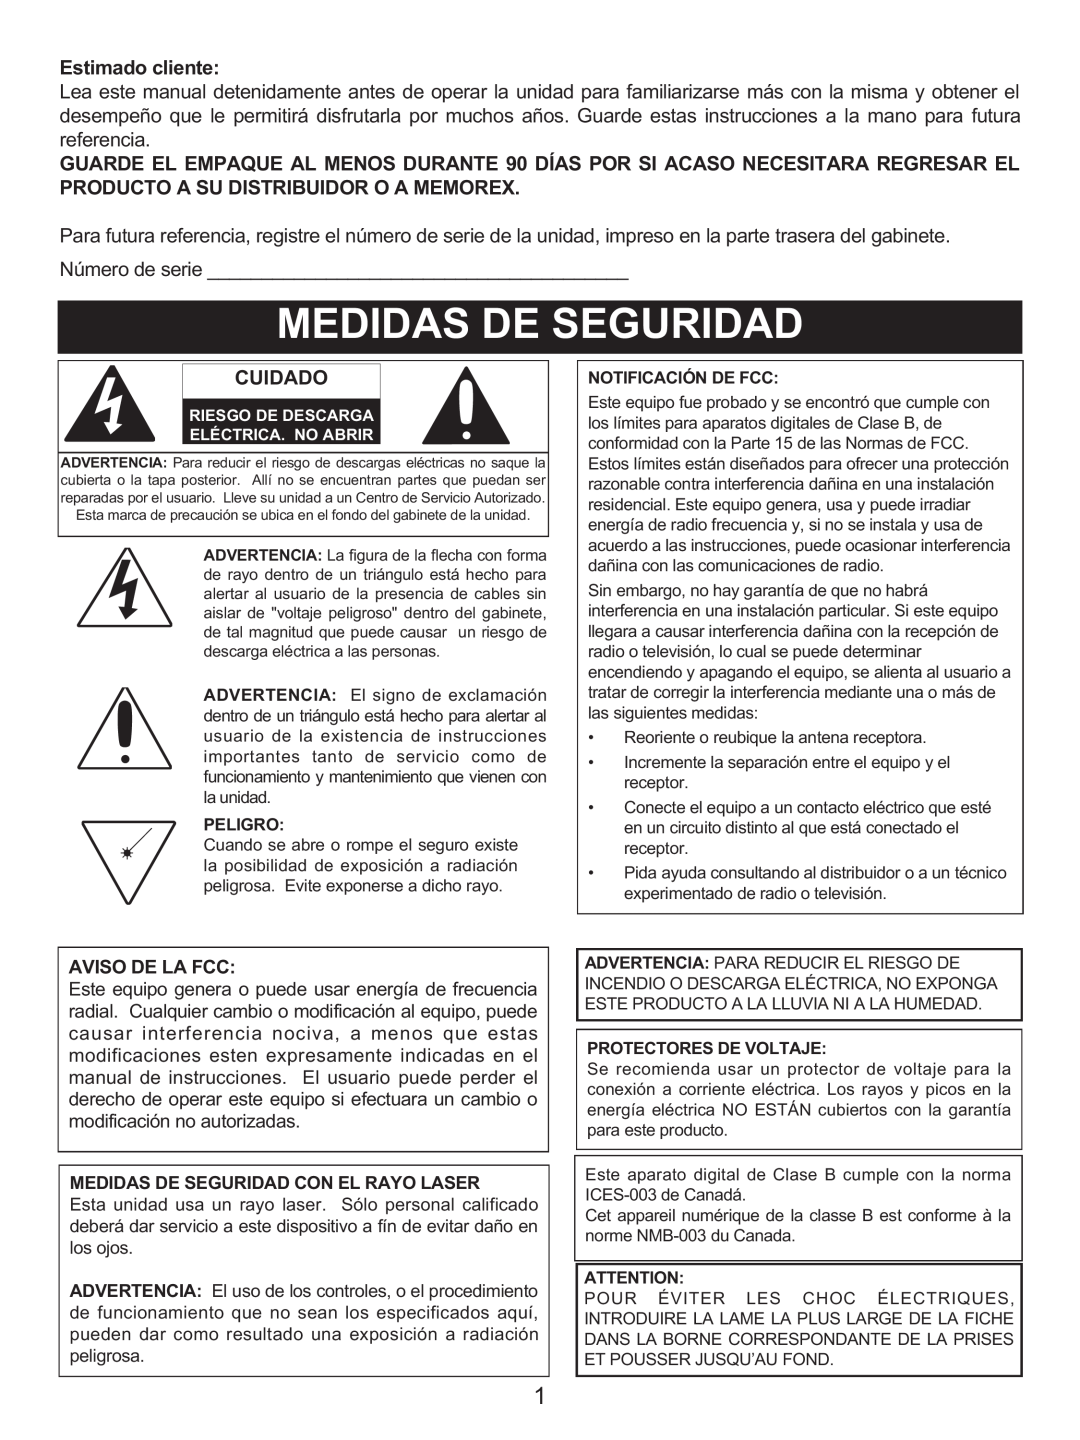 Memorex MX4137 manual Estimado cliente, Cuidado, Aviso De La Fcc, Medidas De Seguridad Con El Rayo Laser 